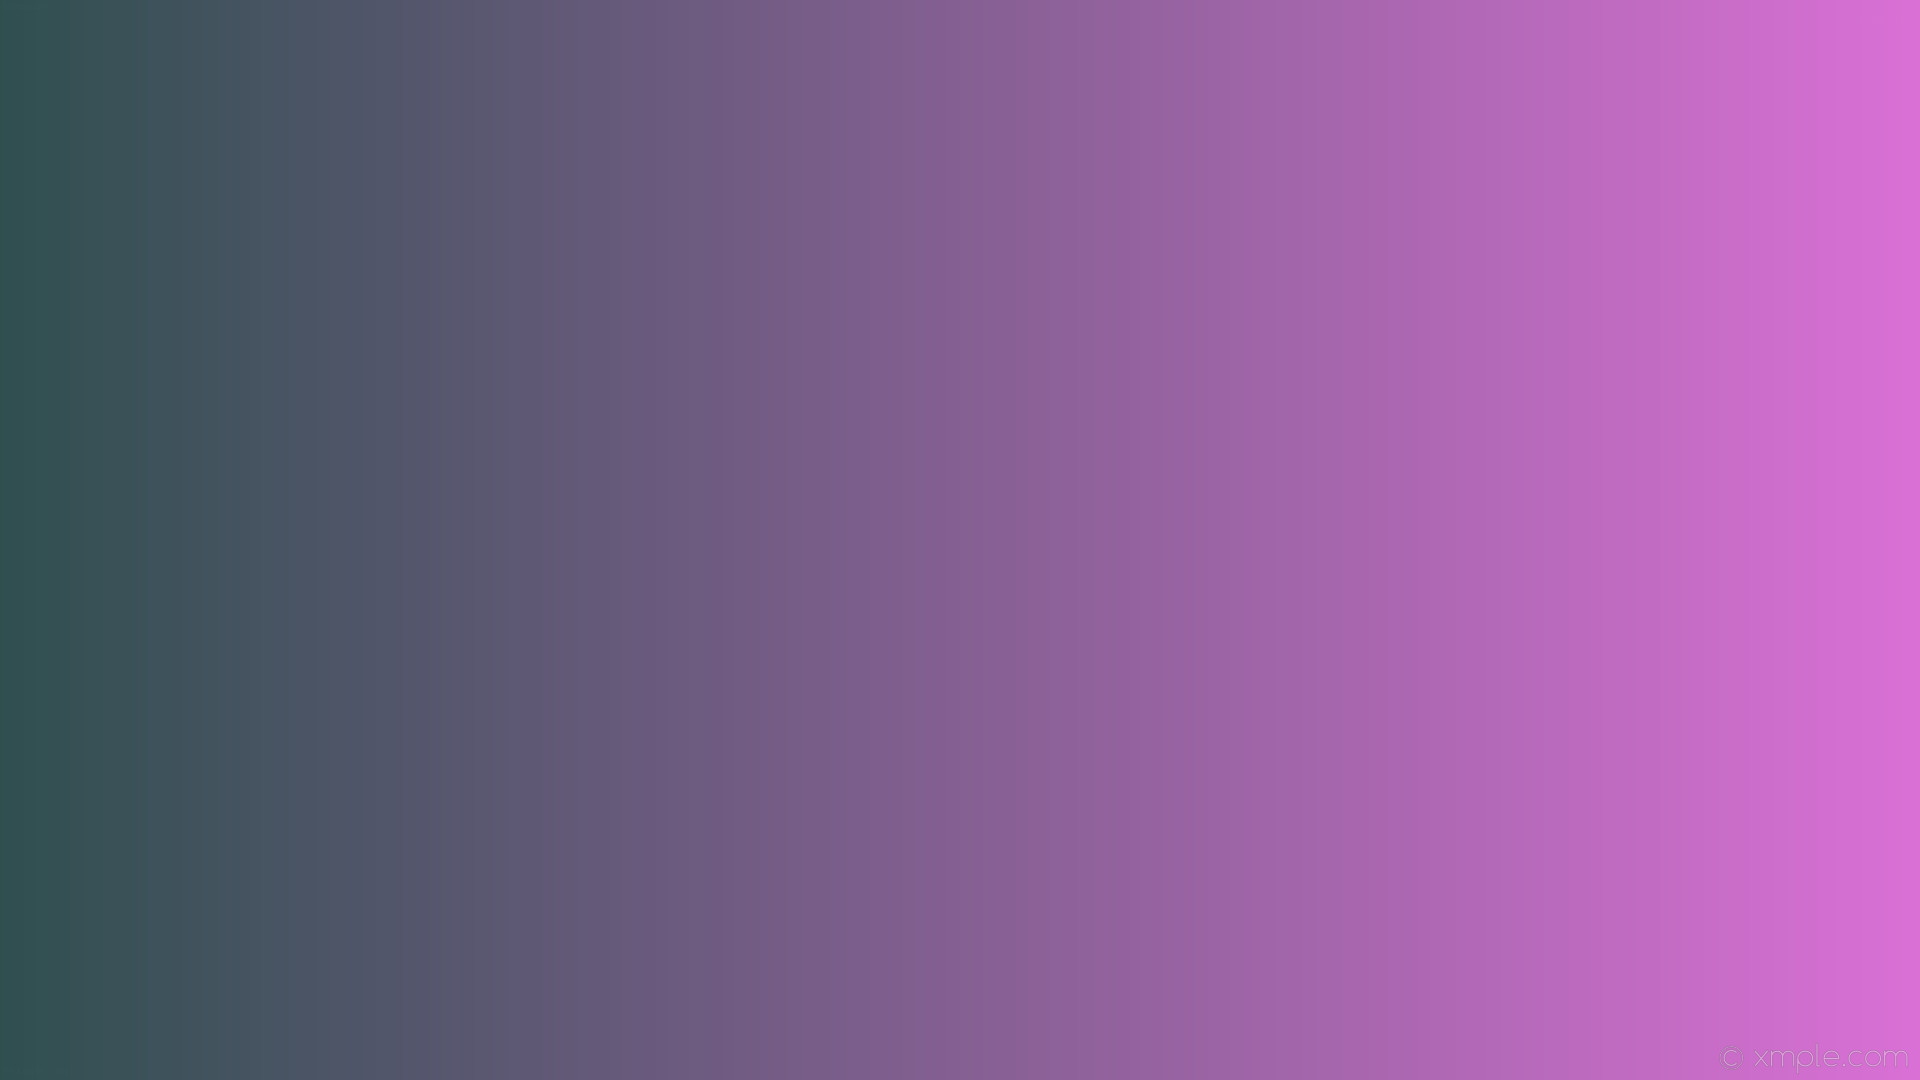 1920x1080 wallpaper gradient purple linear grey orchid dark slate gray #da70d6  #2f4f4f 0Â°